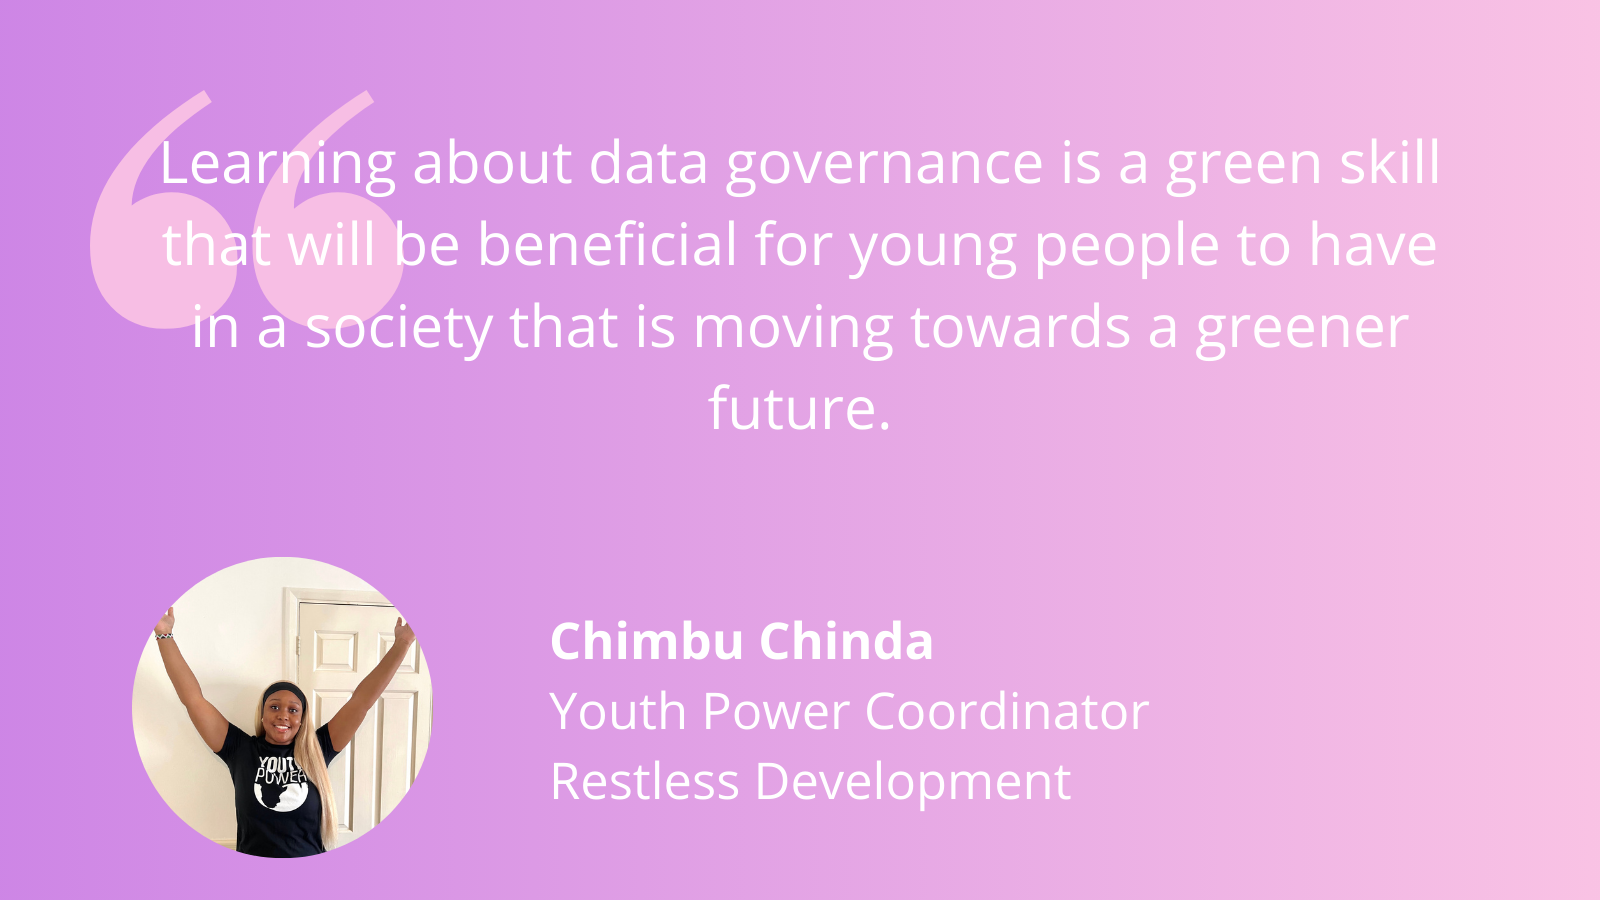 Chimbu Chinda on using data for more sustainable communities